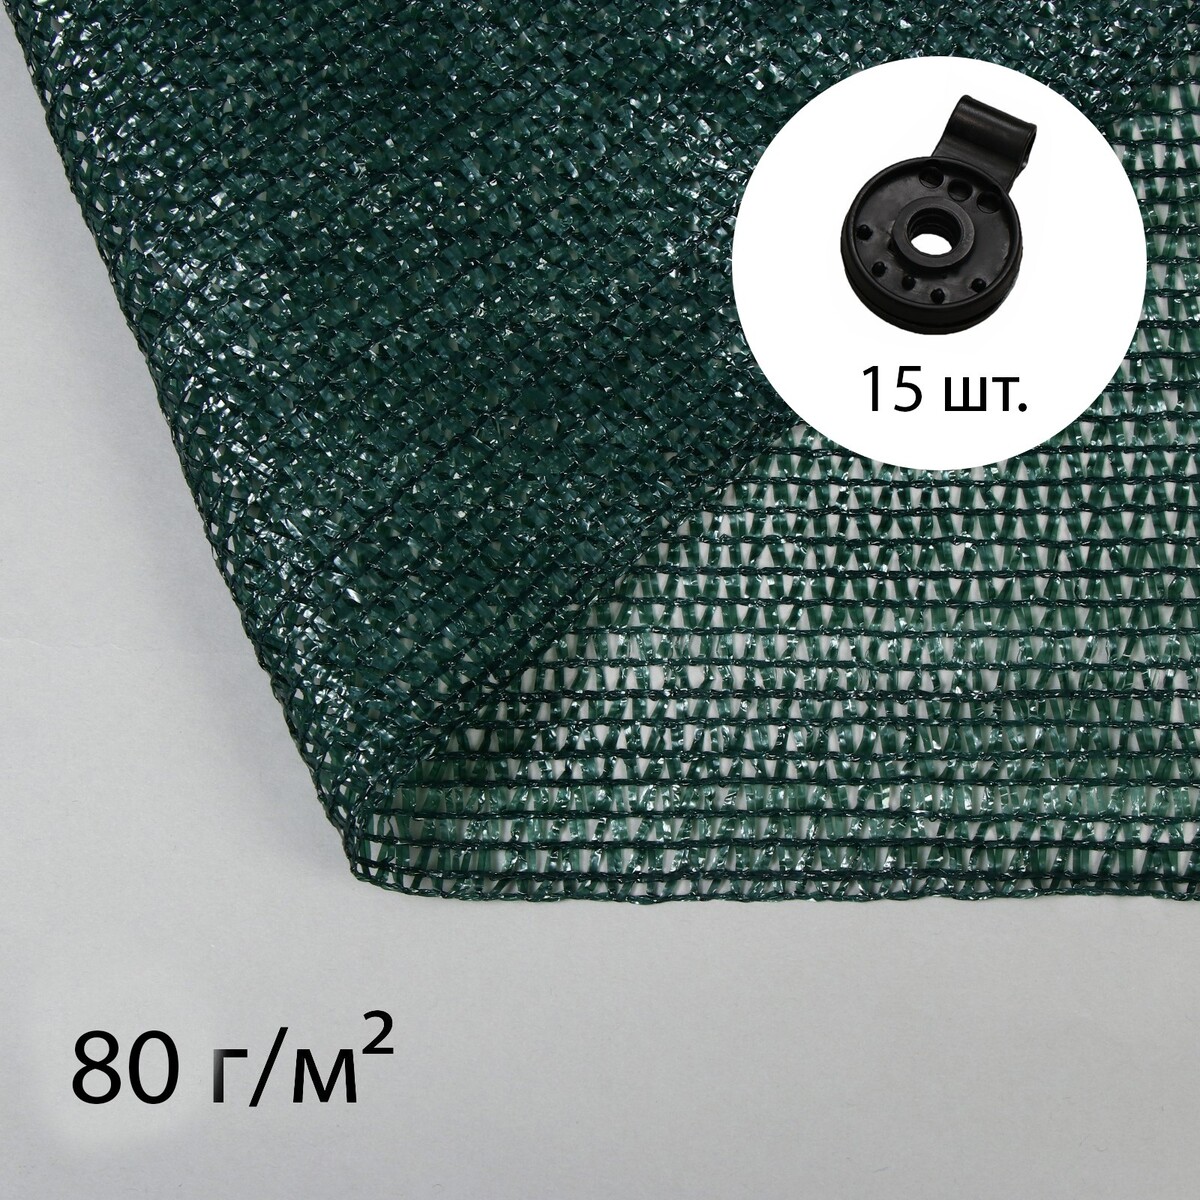 Сетка затеняющая, 5 × 3 м, плотность 80 г/м², темно-зеленая, в наборе 15 клипс сетка затеняющая полиэтилен 300х500 см с клипсой 55% зеленая